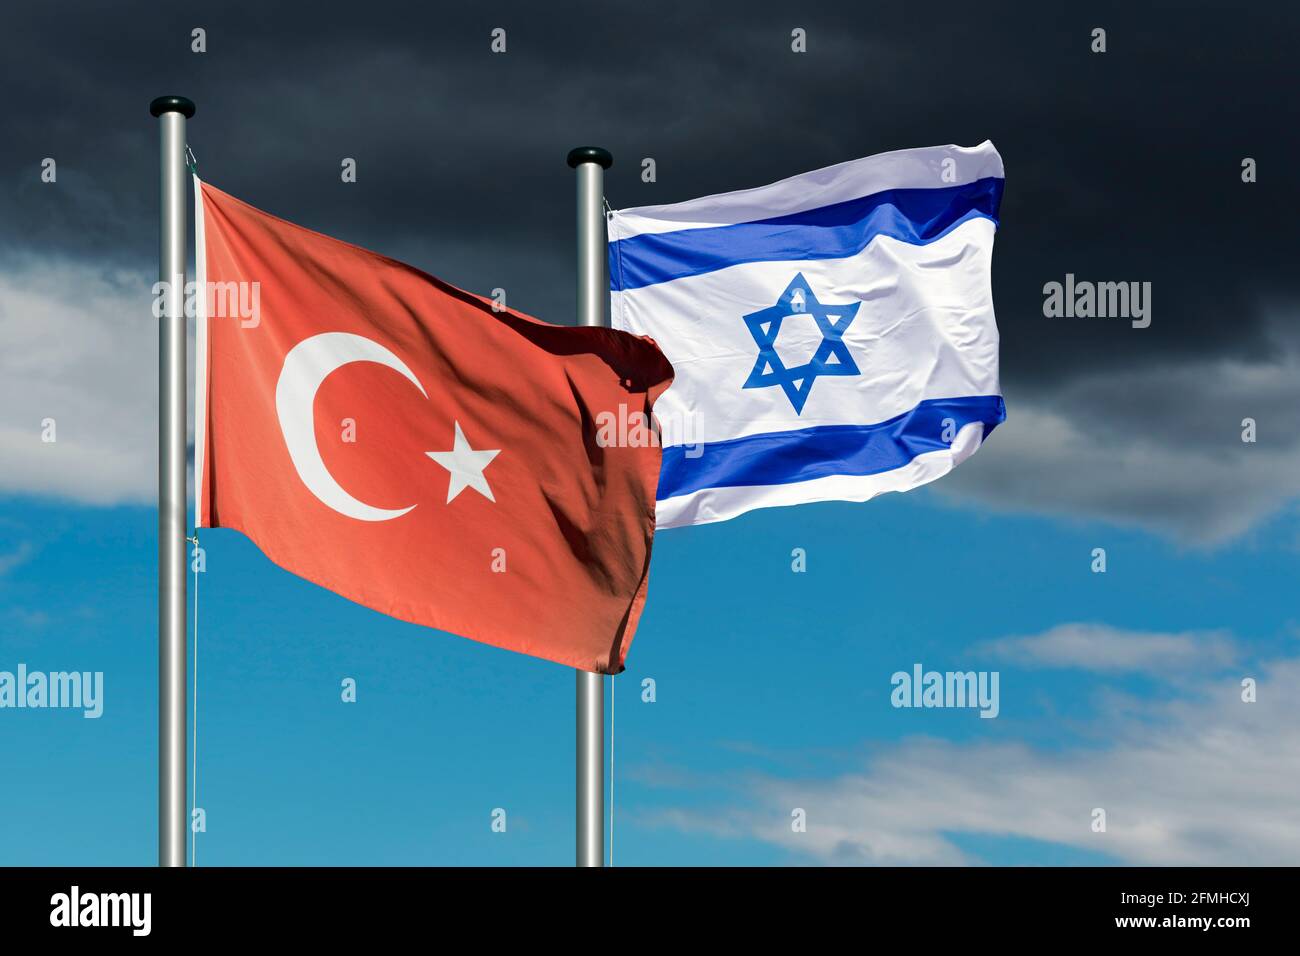 Staatsflaggen Israels und der Türkei vor einem dunklen Himmel, symbolisches Bild für die Beziehungen zwischen Israel und der Türkei Stockfoto